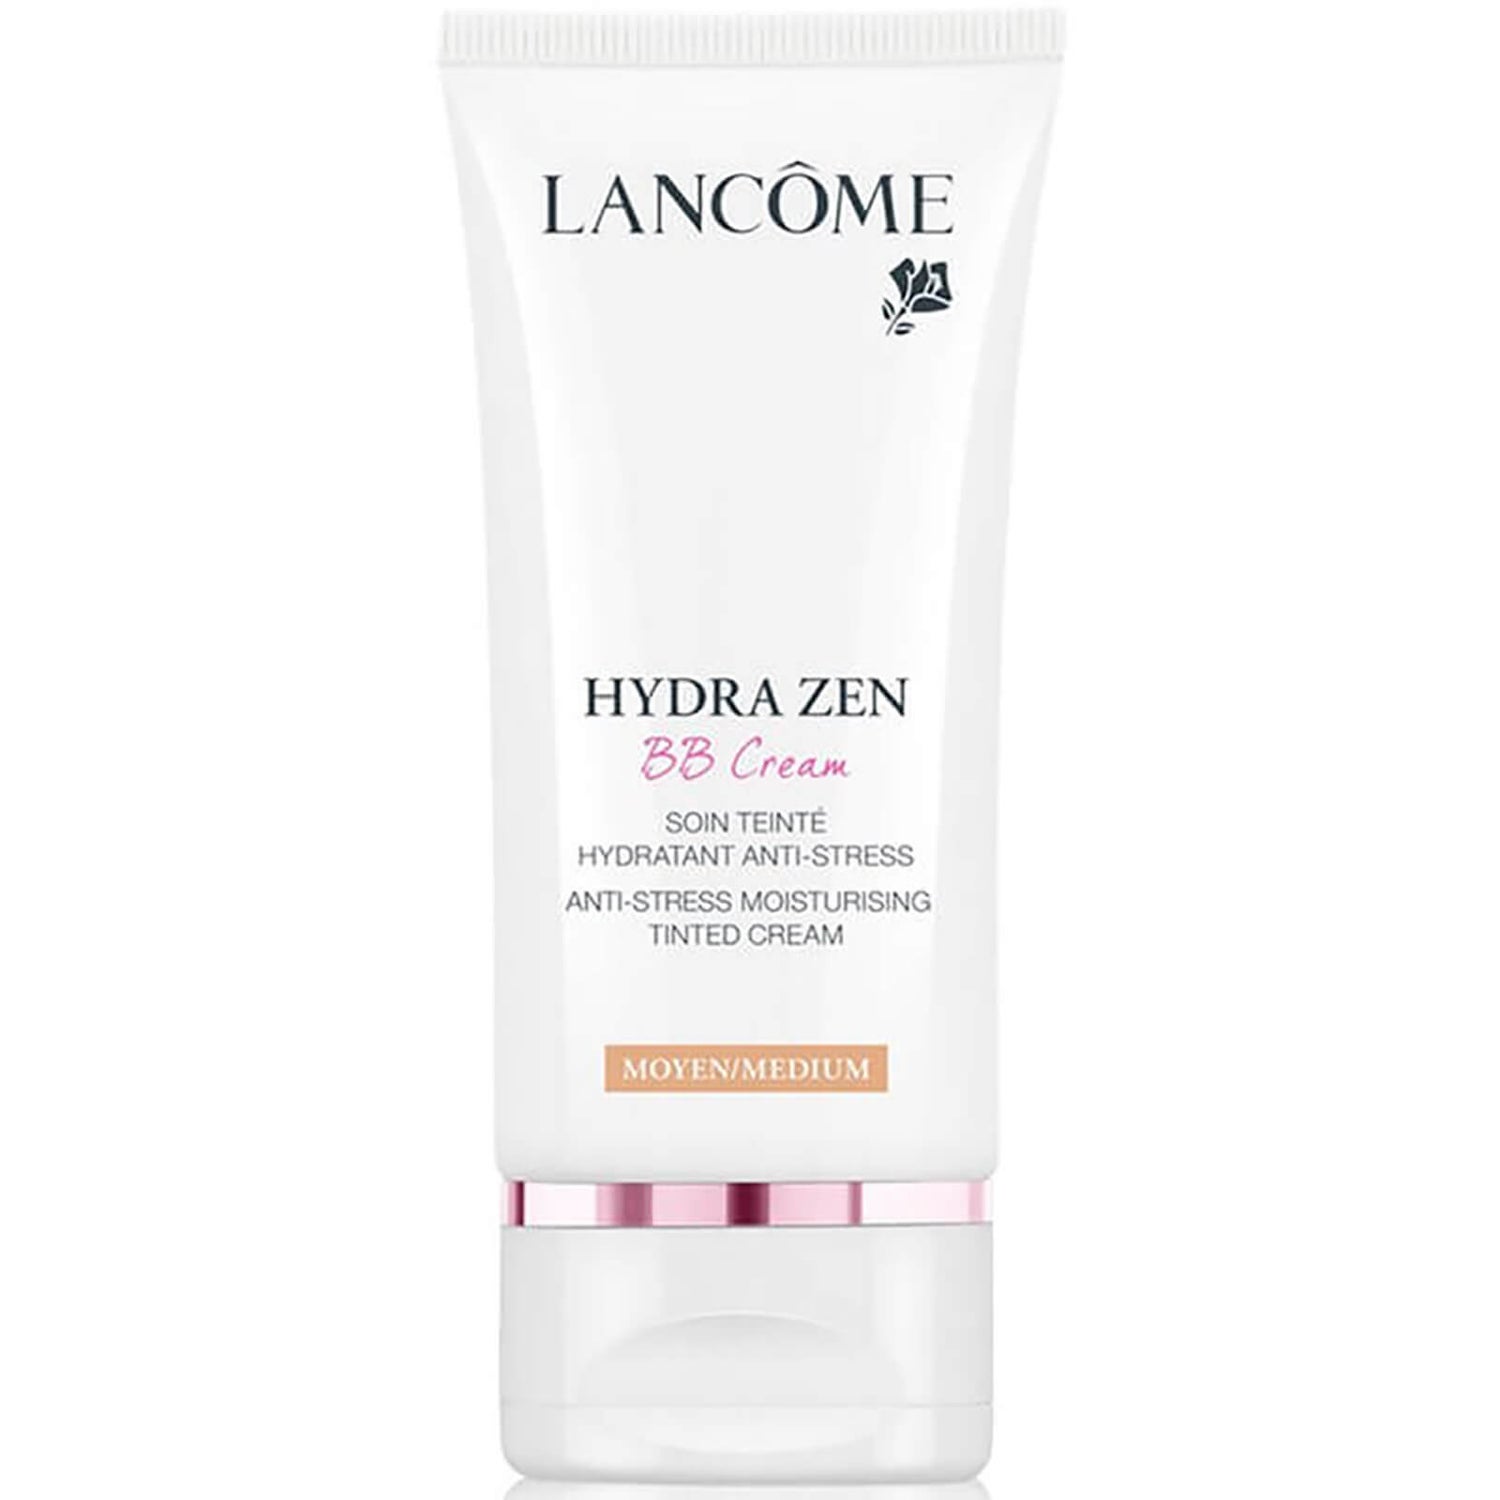 Lancôme Hydra Zen BB Cream 50 ml